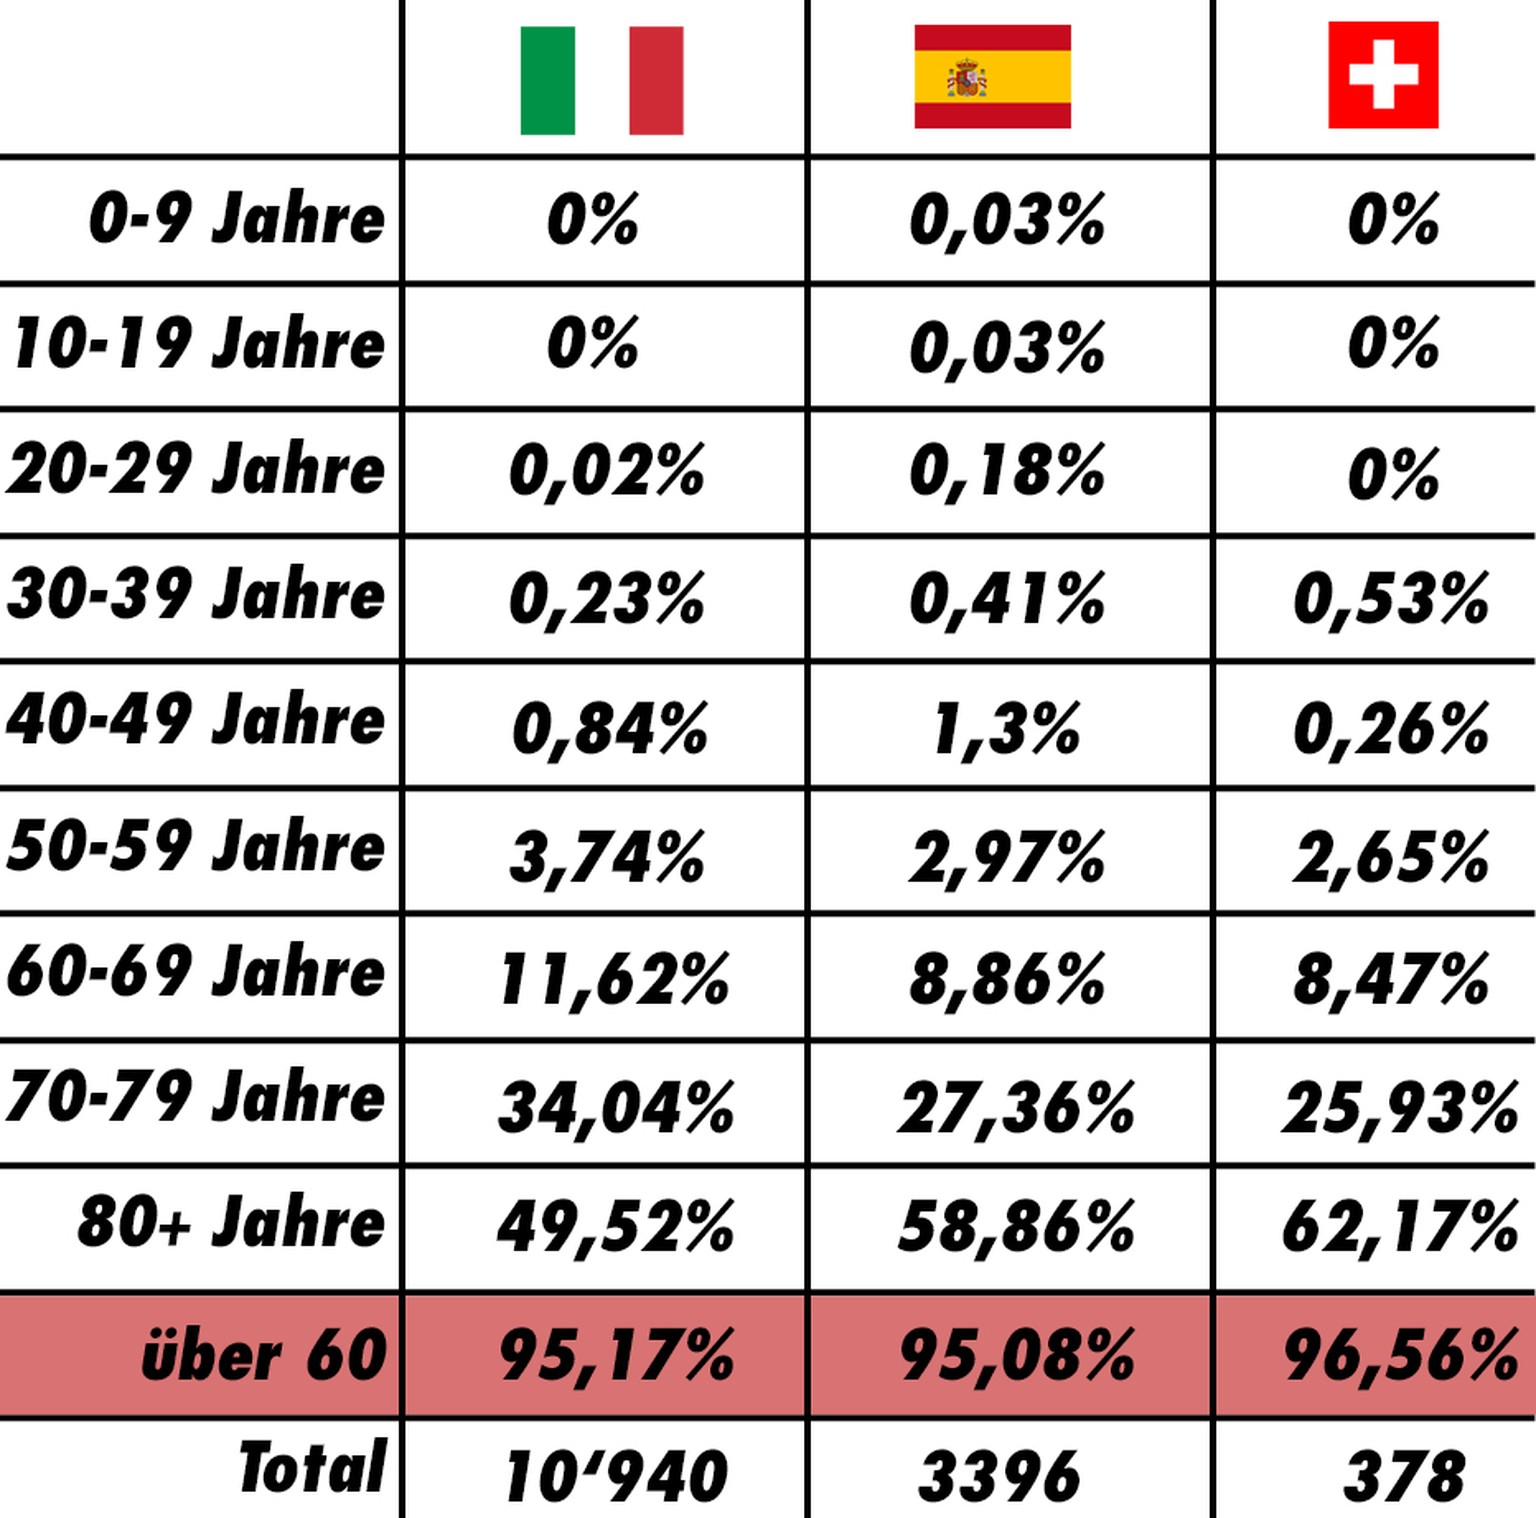 Diese Tabelle zeigt <strong>keine</strong> Sterberaten. Es handelt sich bei den Prozenten um die Anteile an den Todesfällen. Lesebeispiel: In Italien waren 95,17% der an Covid-19 Verstorbenen über 60 Jahre alt.